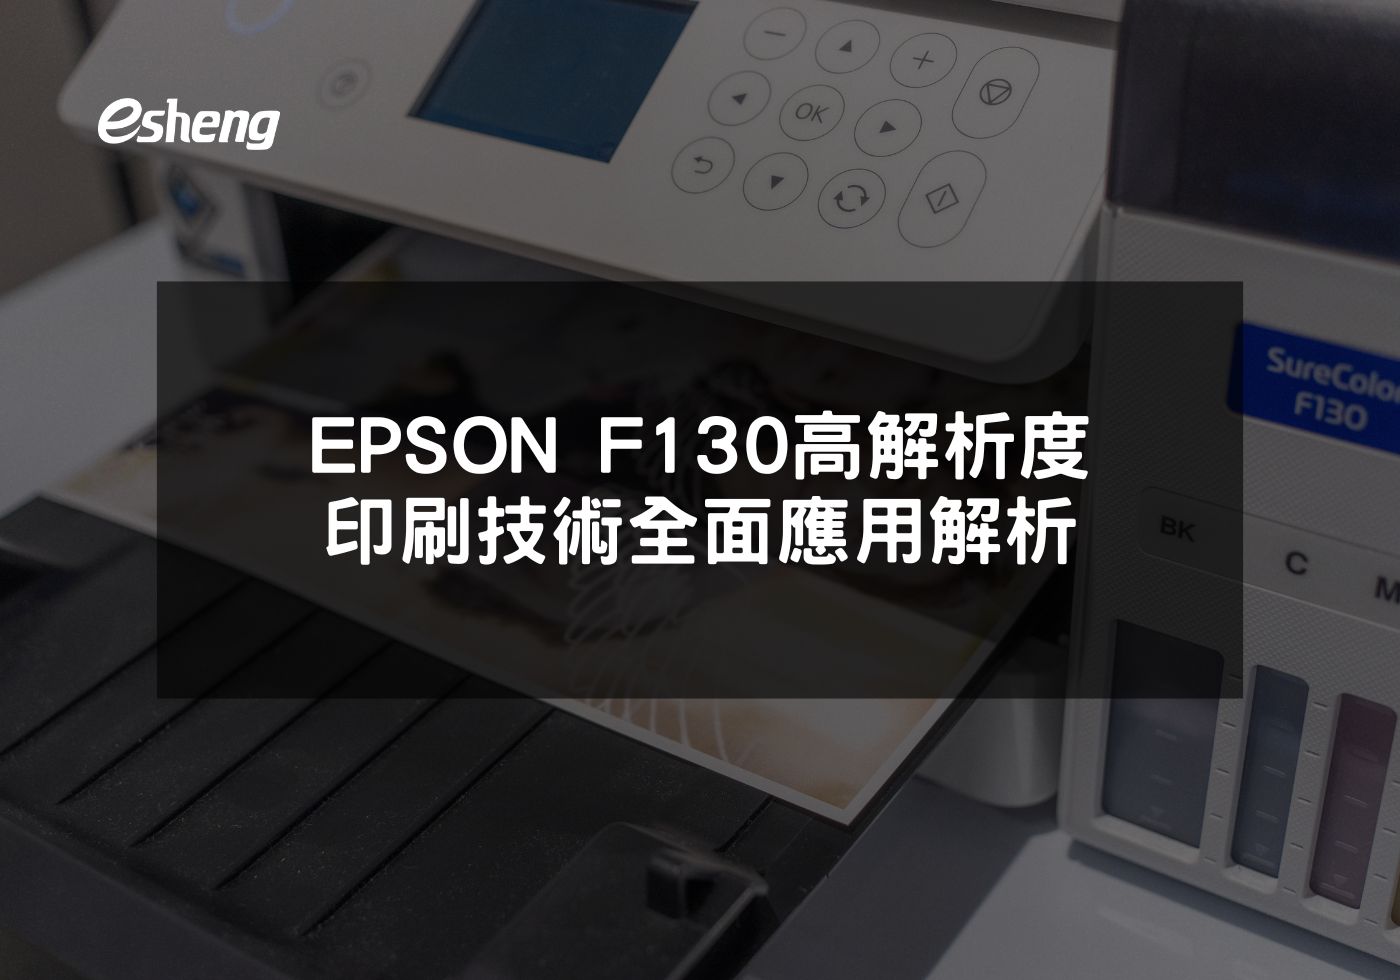 EPSON F130熱昇華印表機 高效能與精確印刷相結合